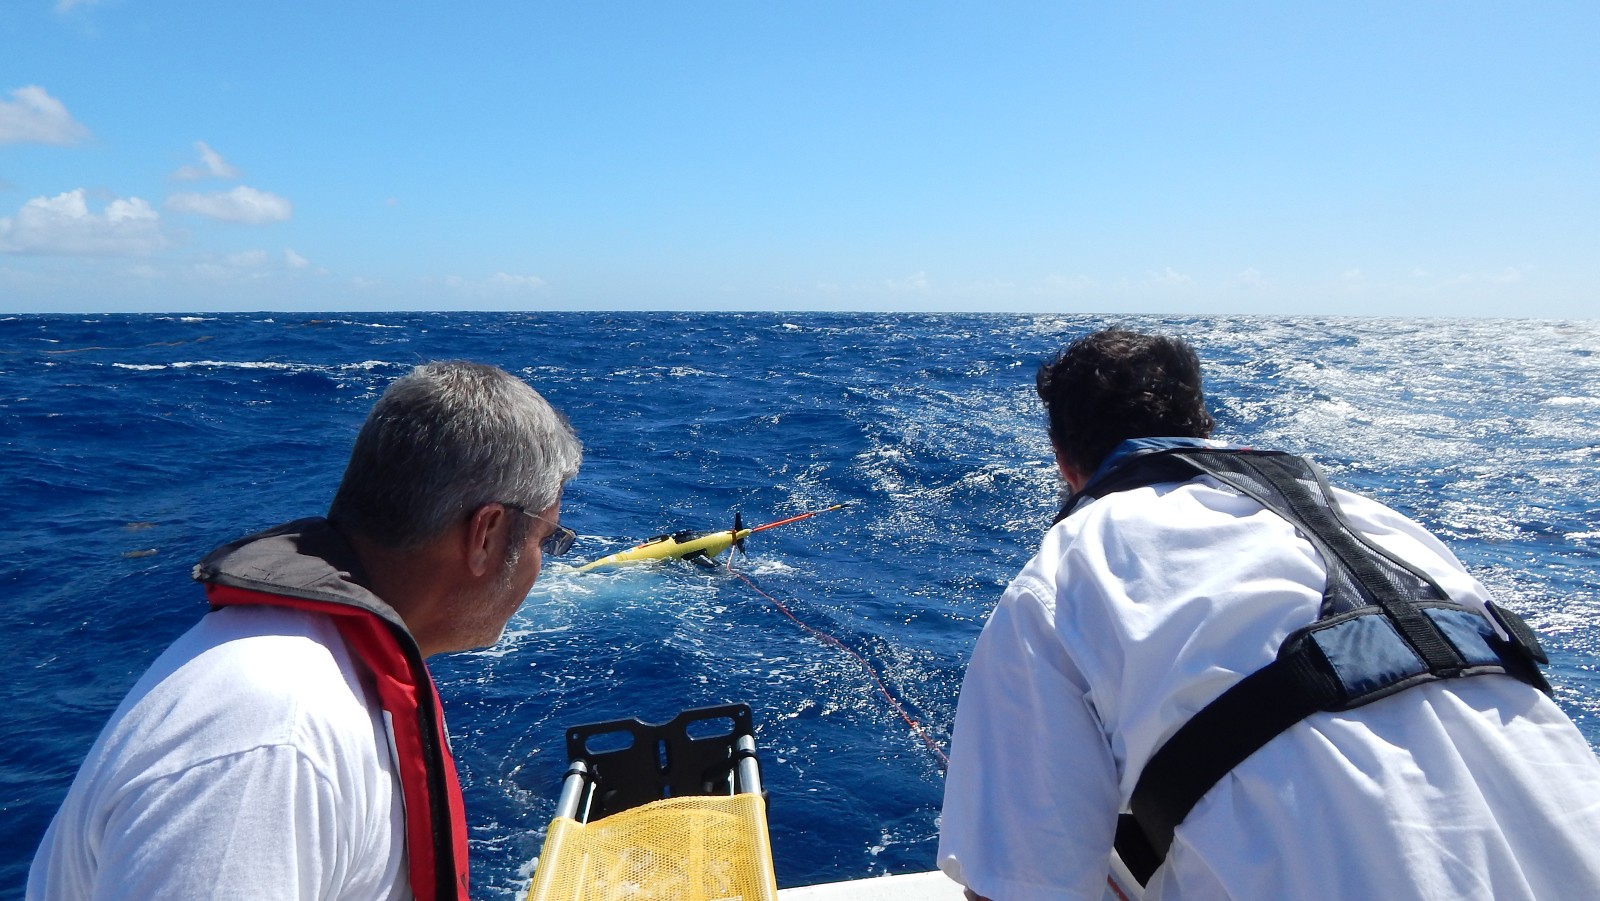 El profesor Julio Morell de la Universidad de Puerto Rico en Mayagüez y Grant Rawson del AOML, observan el planeador a la deriva después de desplegarlo el 6 de febrero de 2015. Crédito de la imagen: NOAA